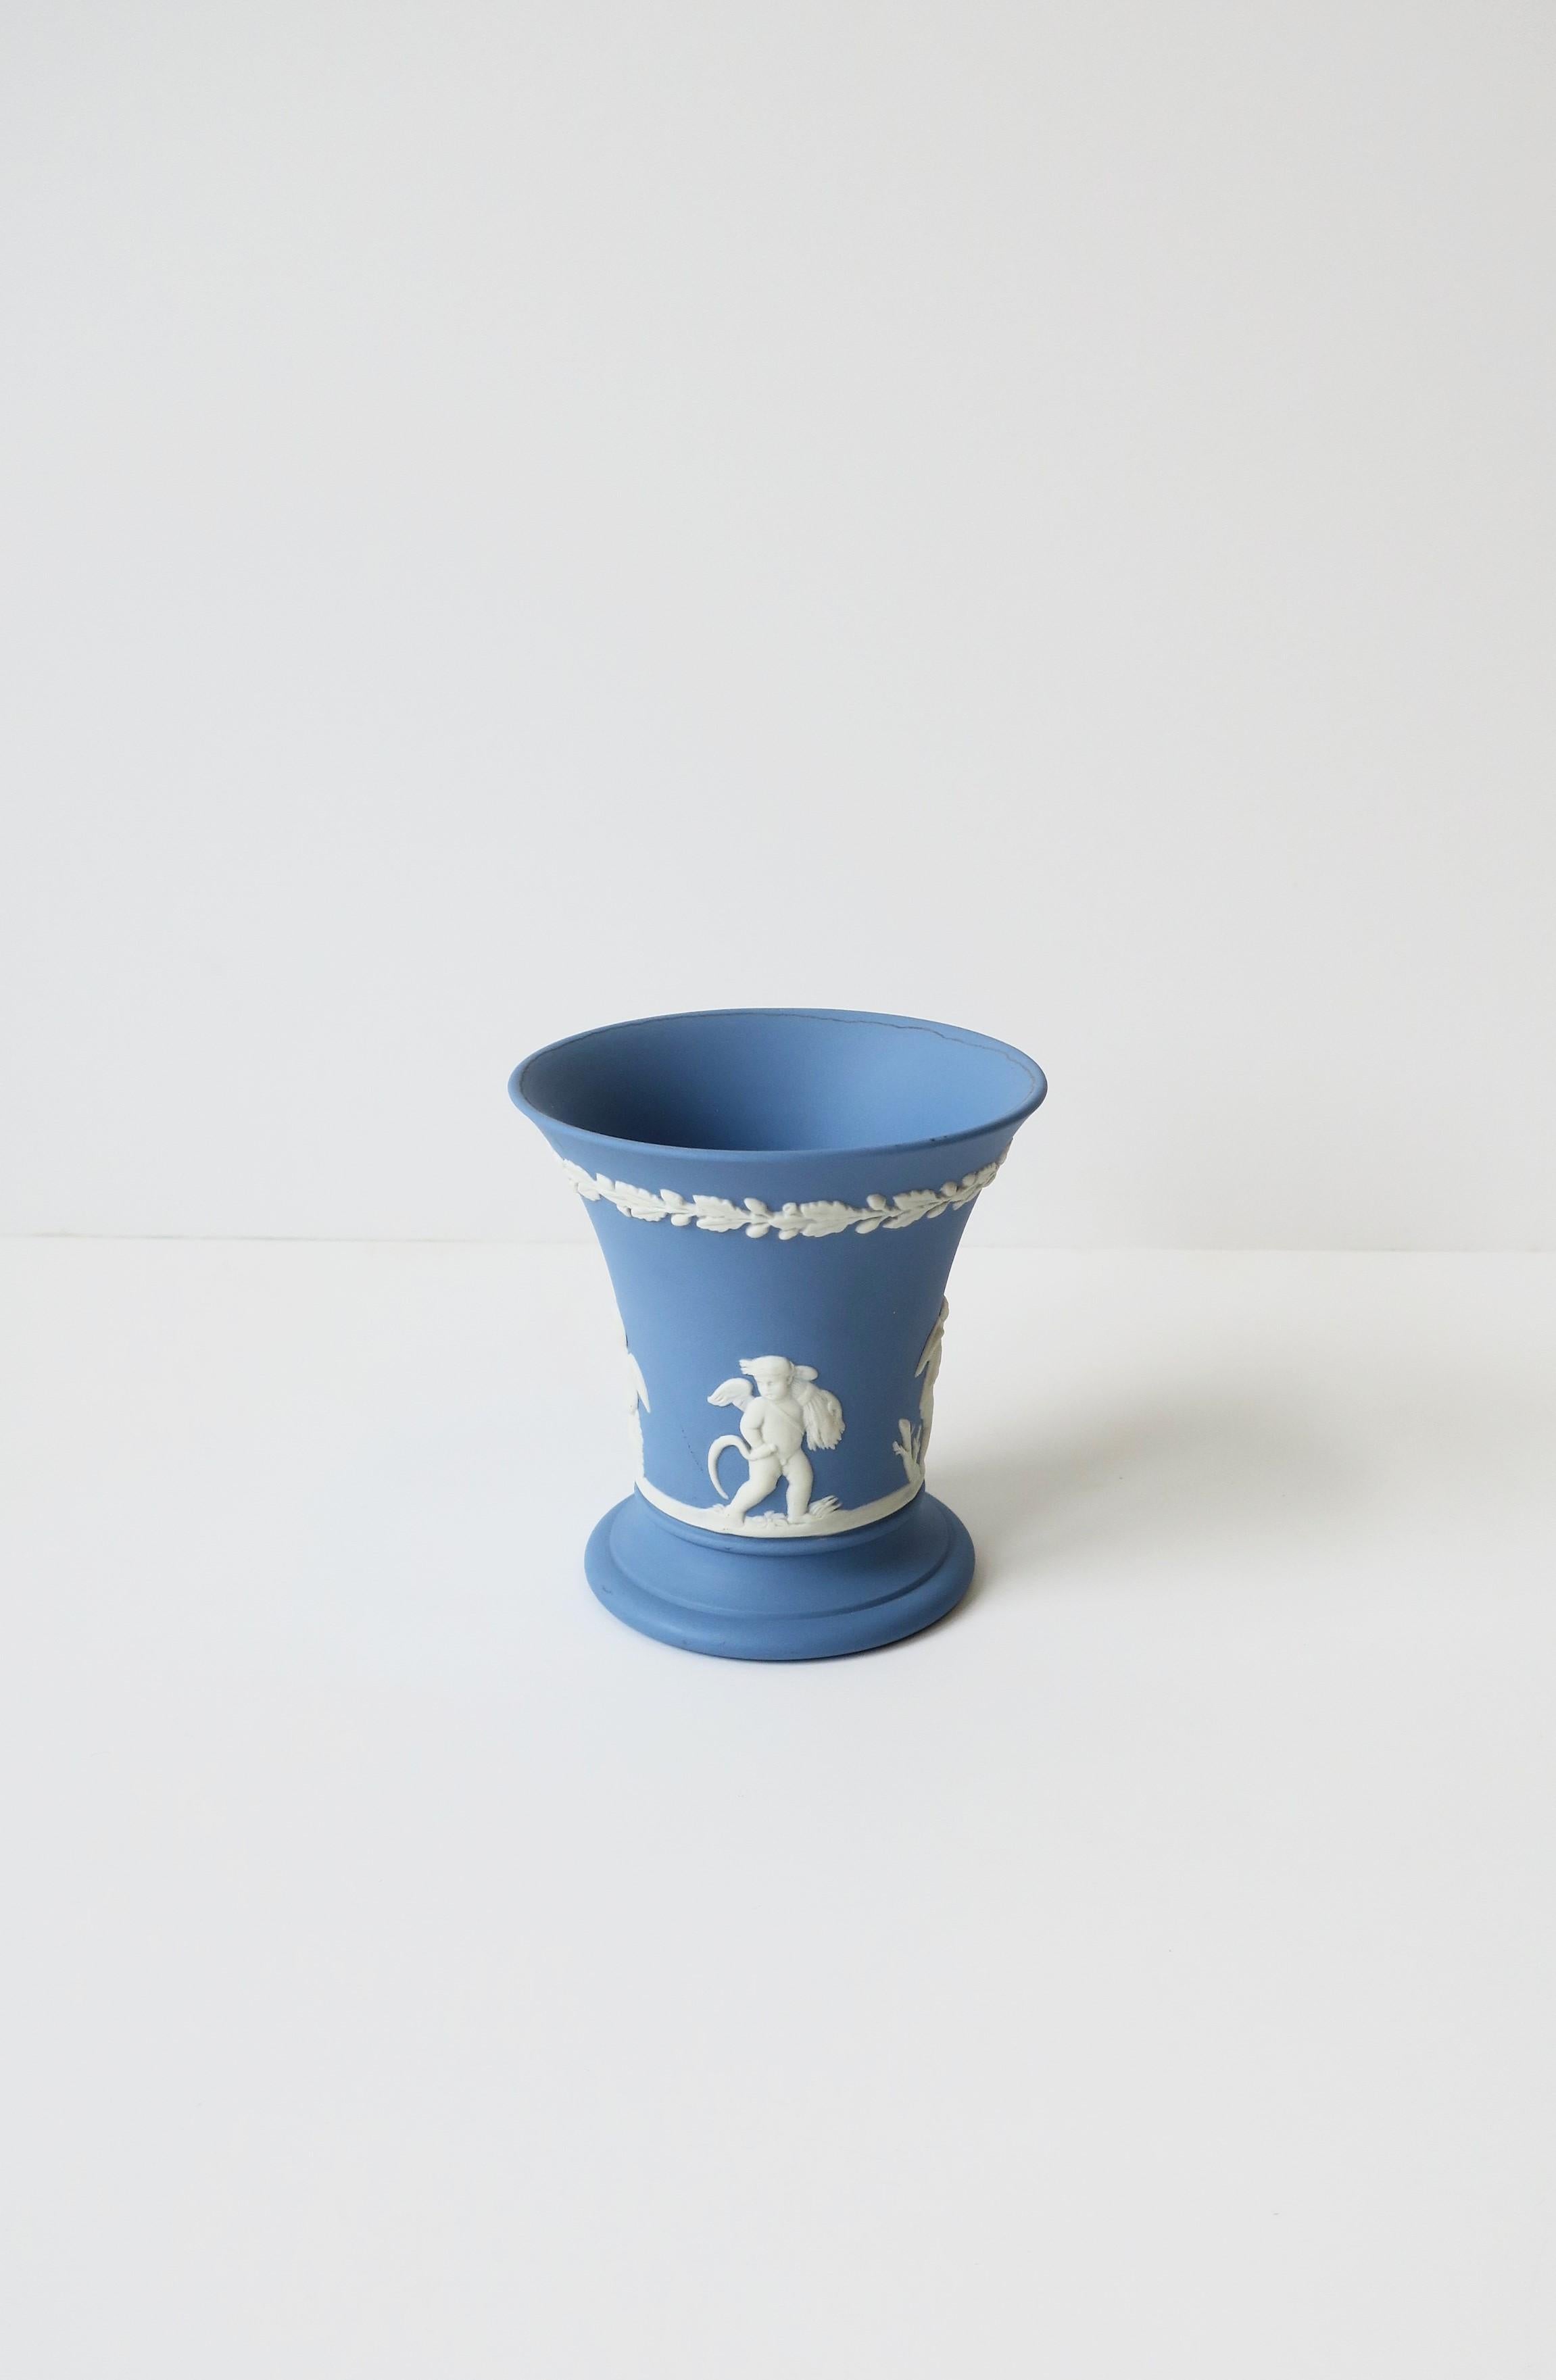 20th Century English Neoclassical Wedgwood Jasperware Blue and White Vase